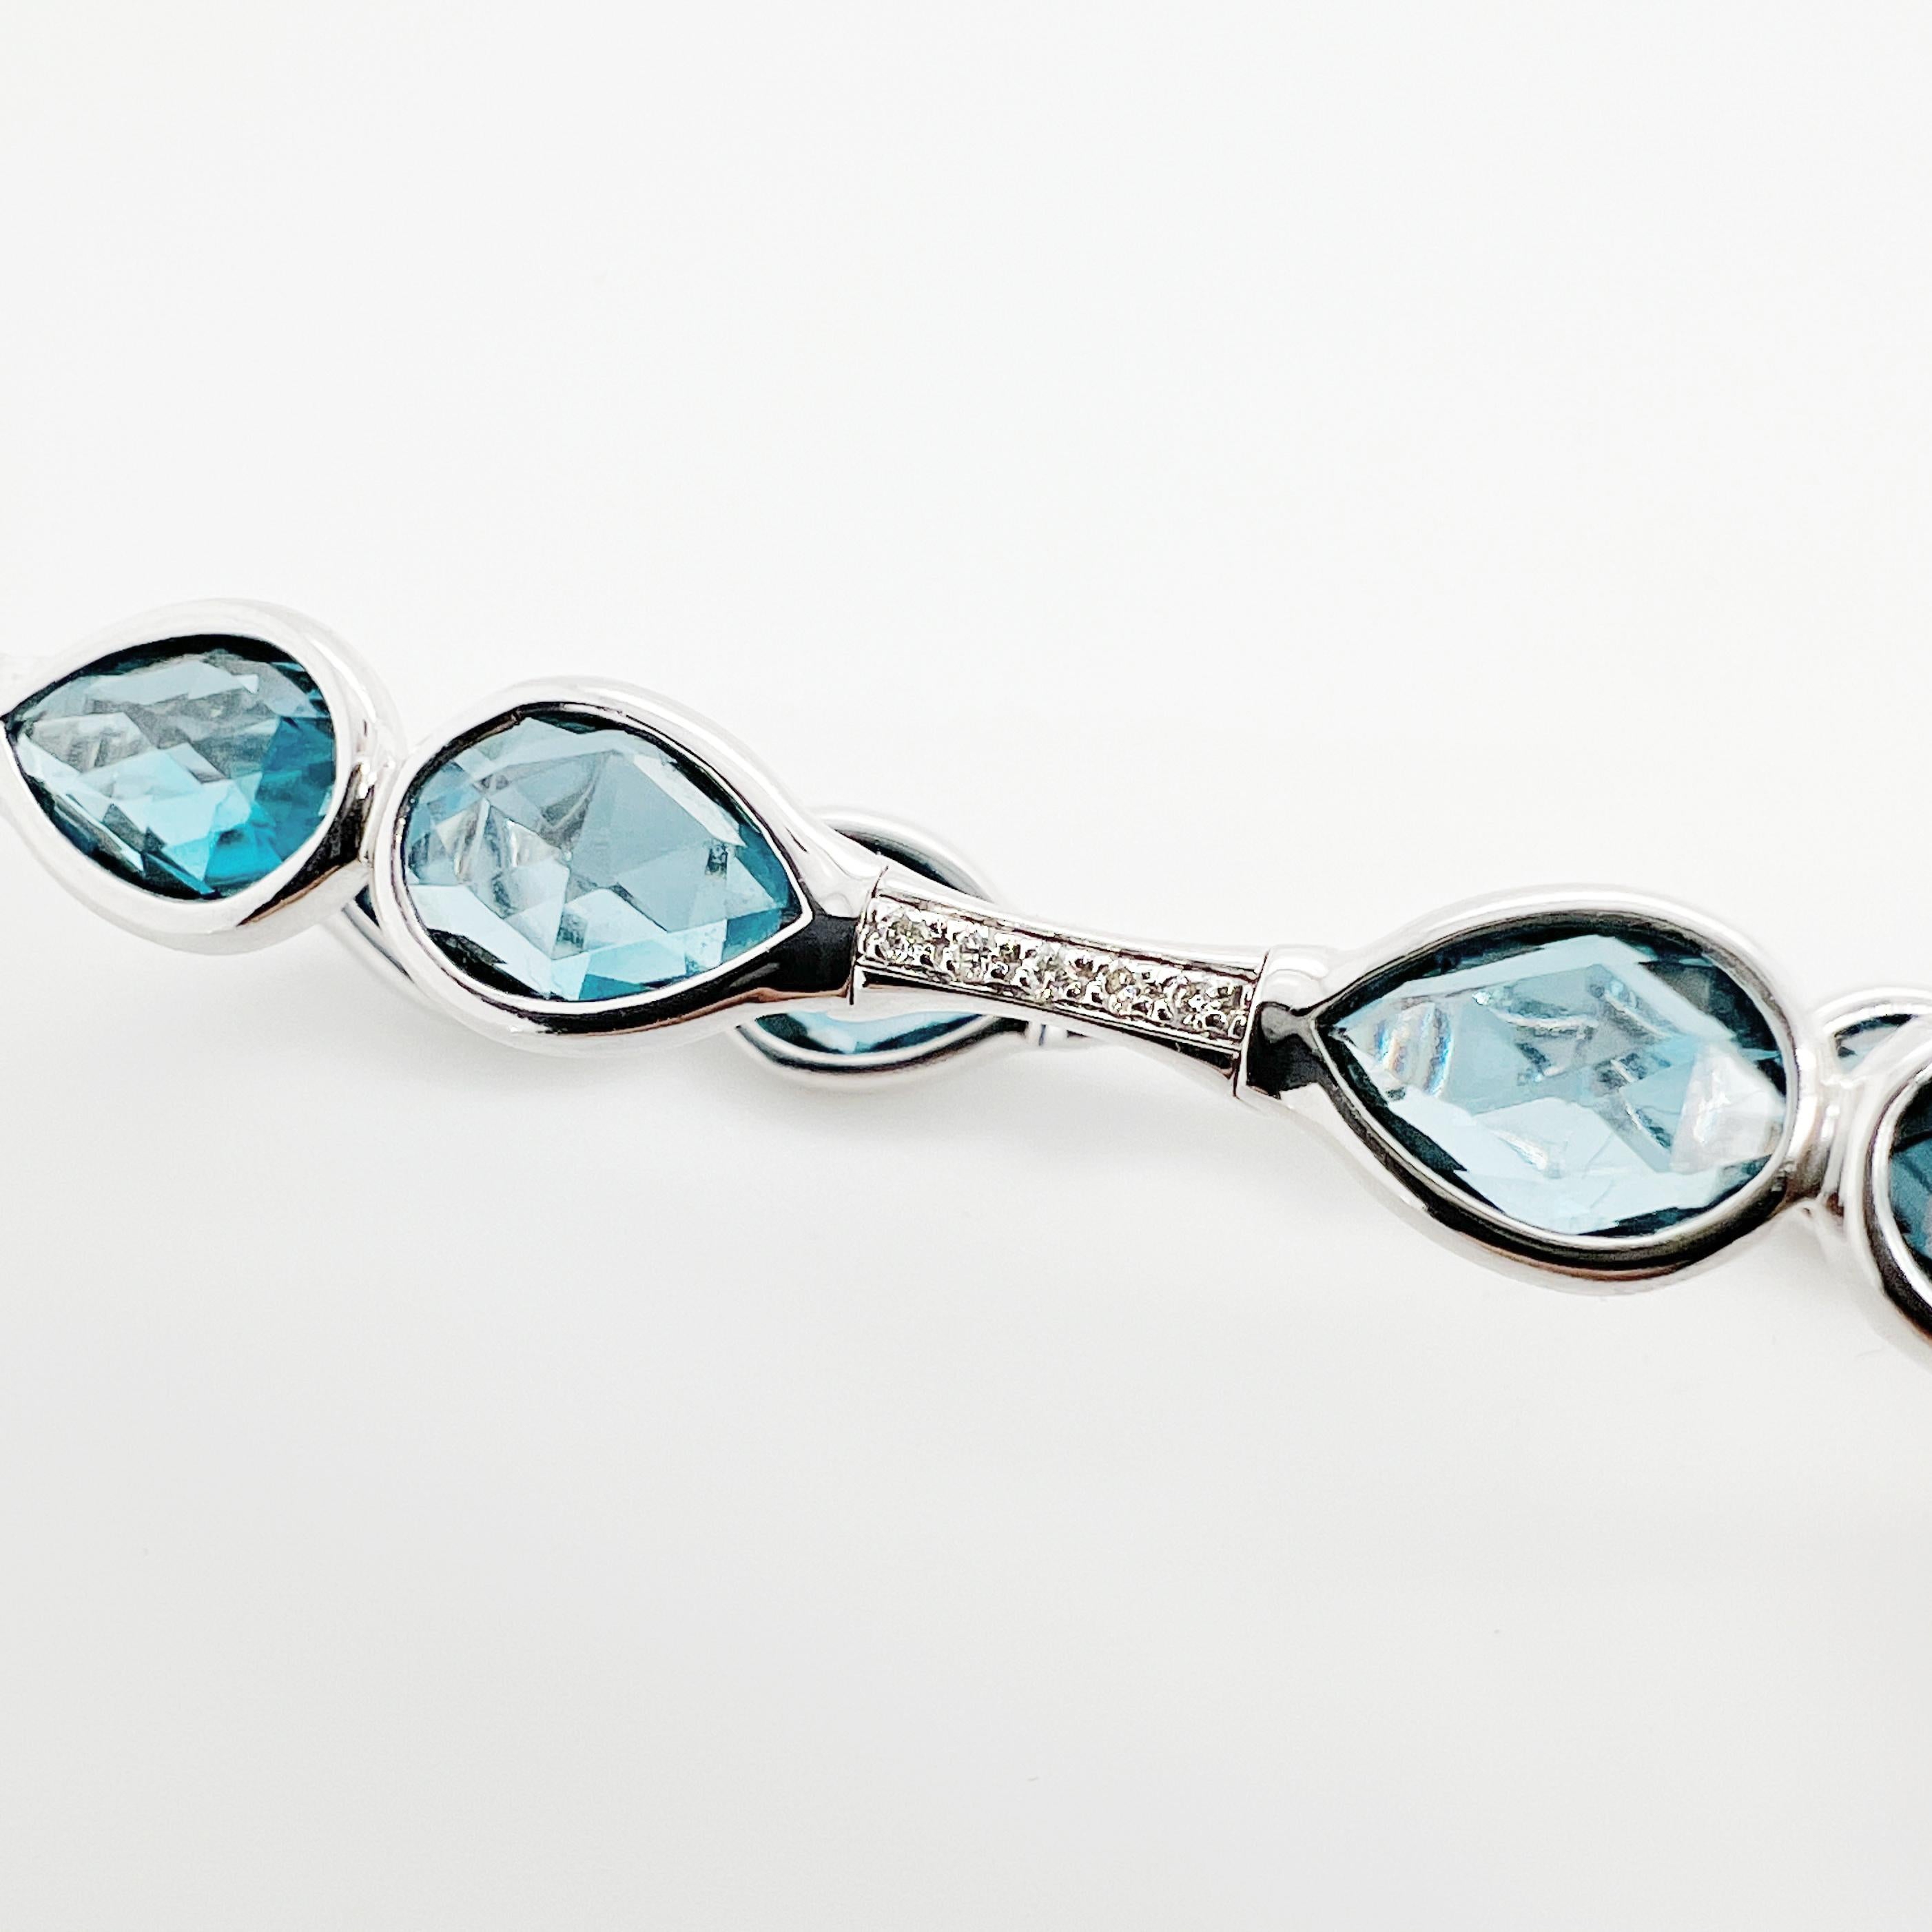 Dieses Armband ist ein  atemberaubende Kombination aus Diamanten und Blautopas. Die Diamanten sind fachmännisch in die verschlungene goldene Struktur eingefasst und funkeln bei jeder Bewegung des Armbands um die Wette. Die blauen Topas-Edelsteine